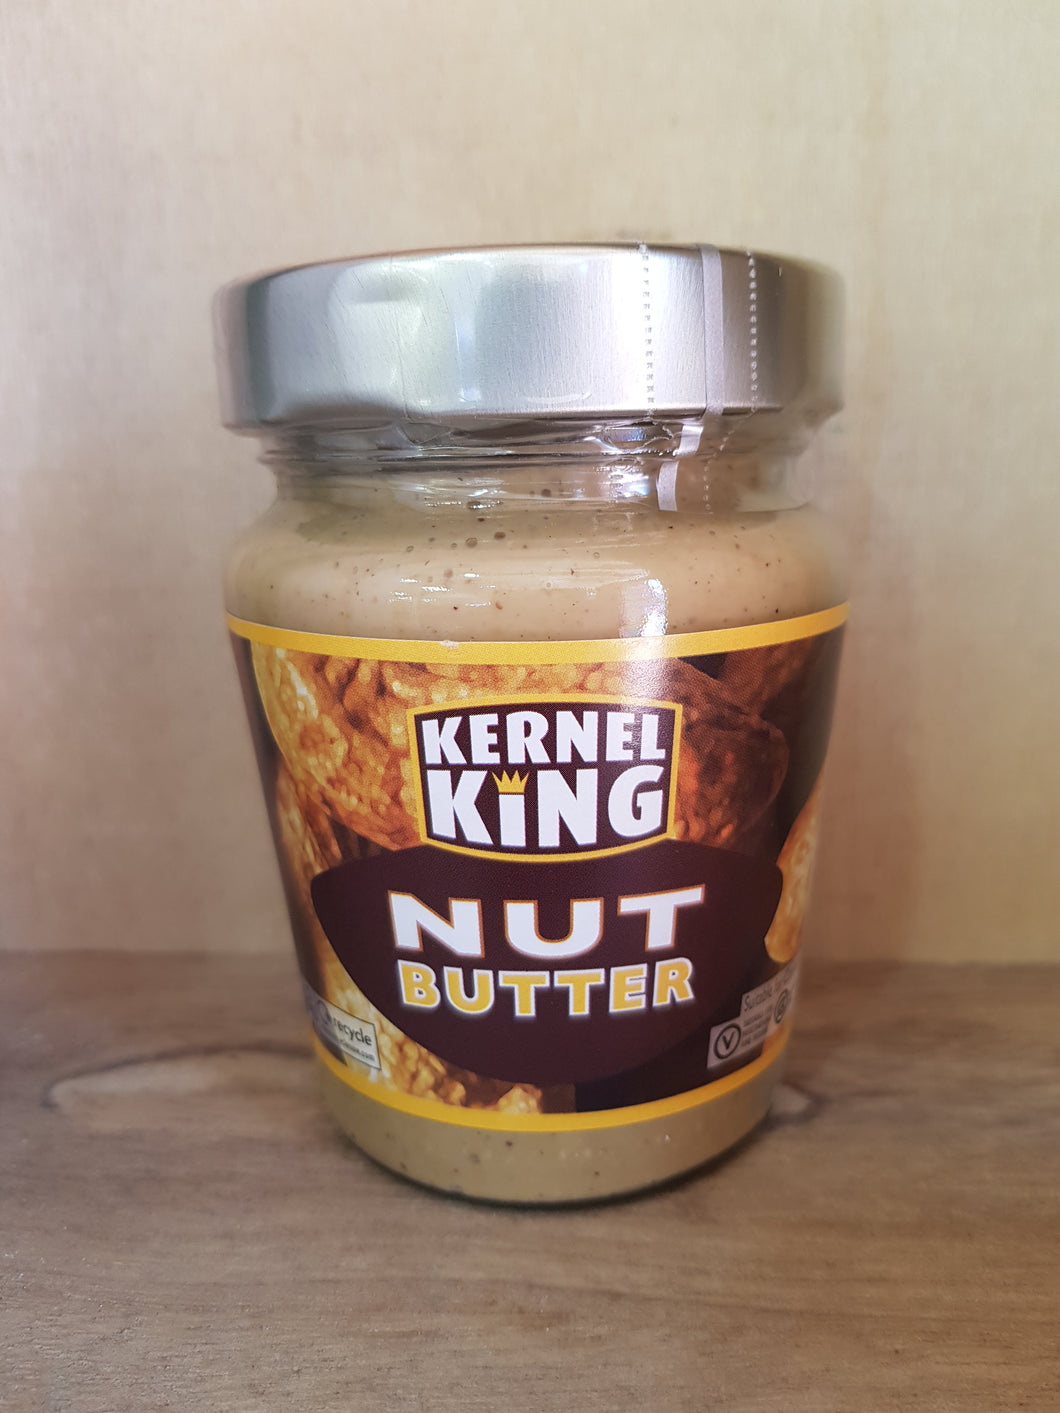 Kernel king nut butter